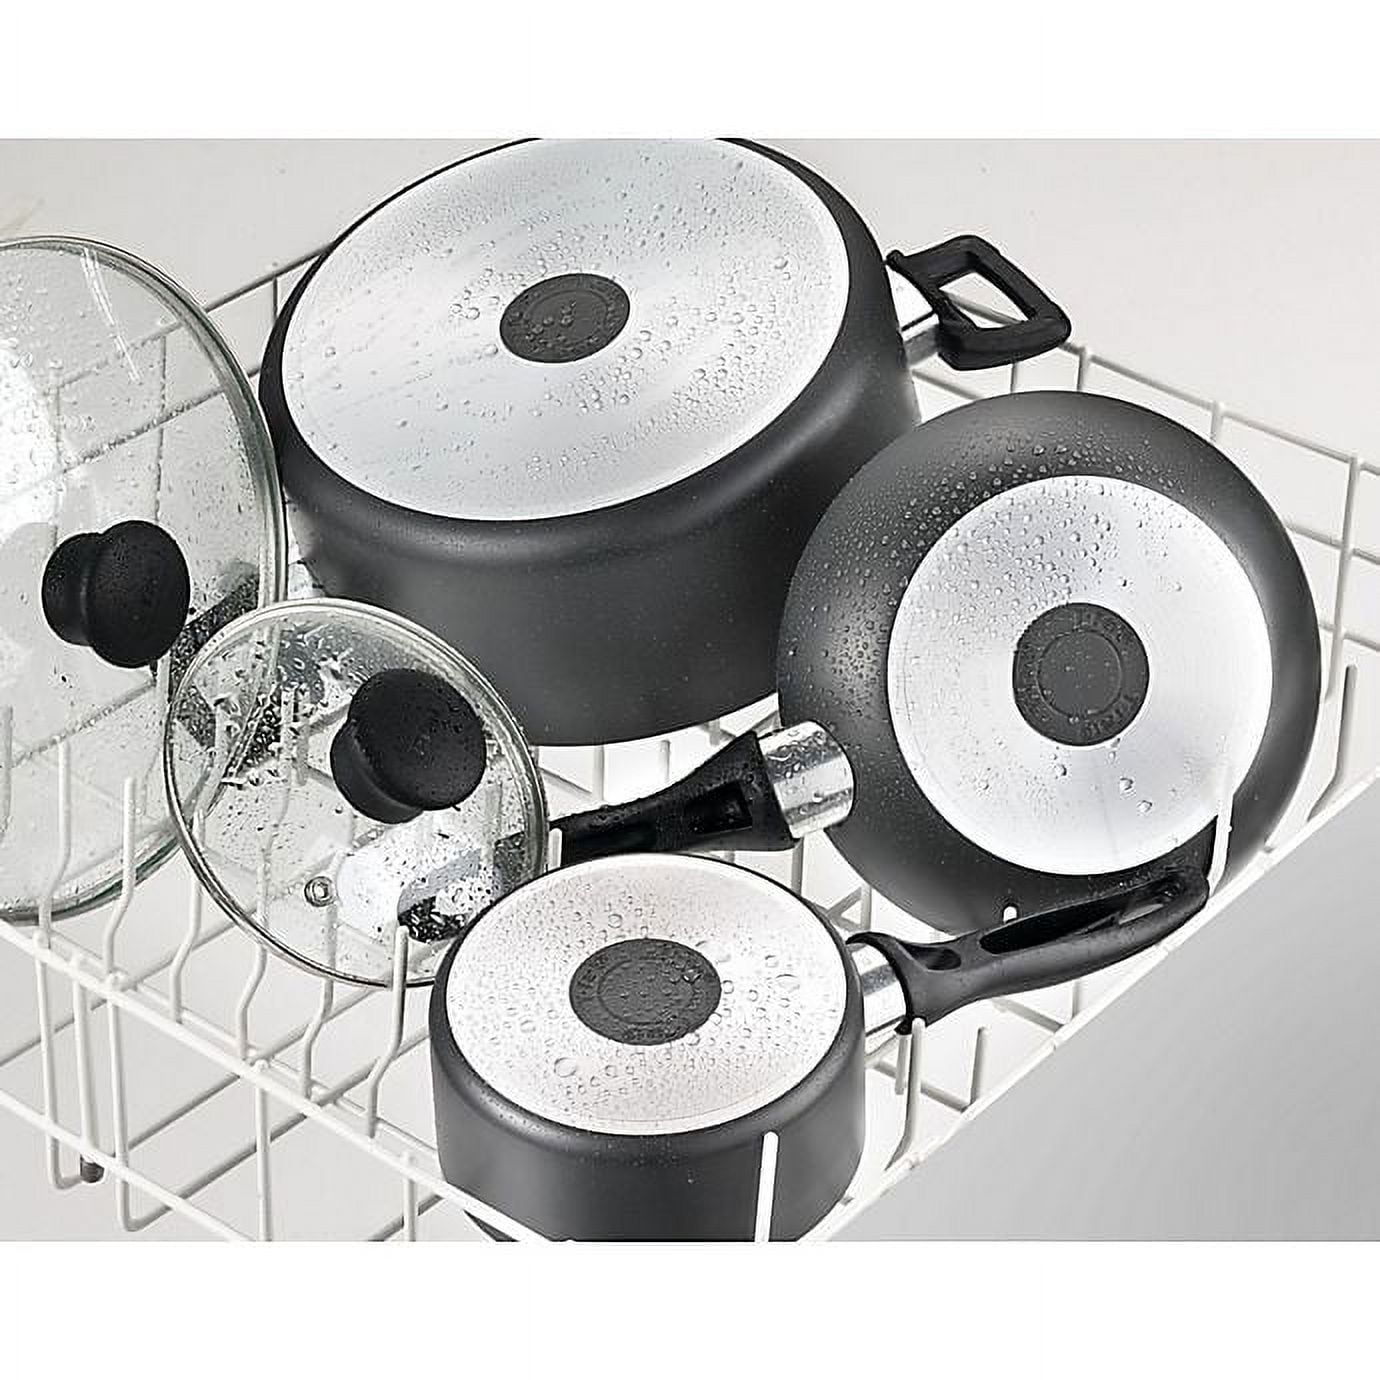 Tefal Pure Cook Non-Stick 12-Piece Aluminum Cookware Set - Black (B145SCBI)  for sale online